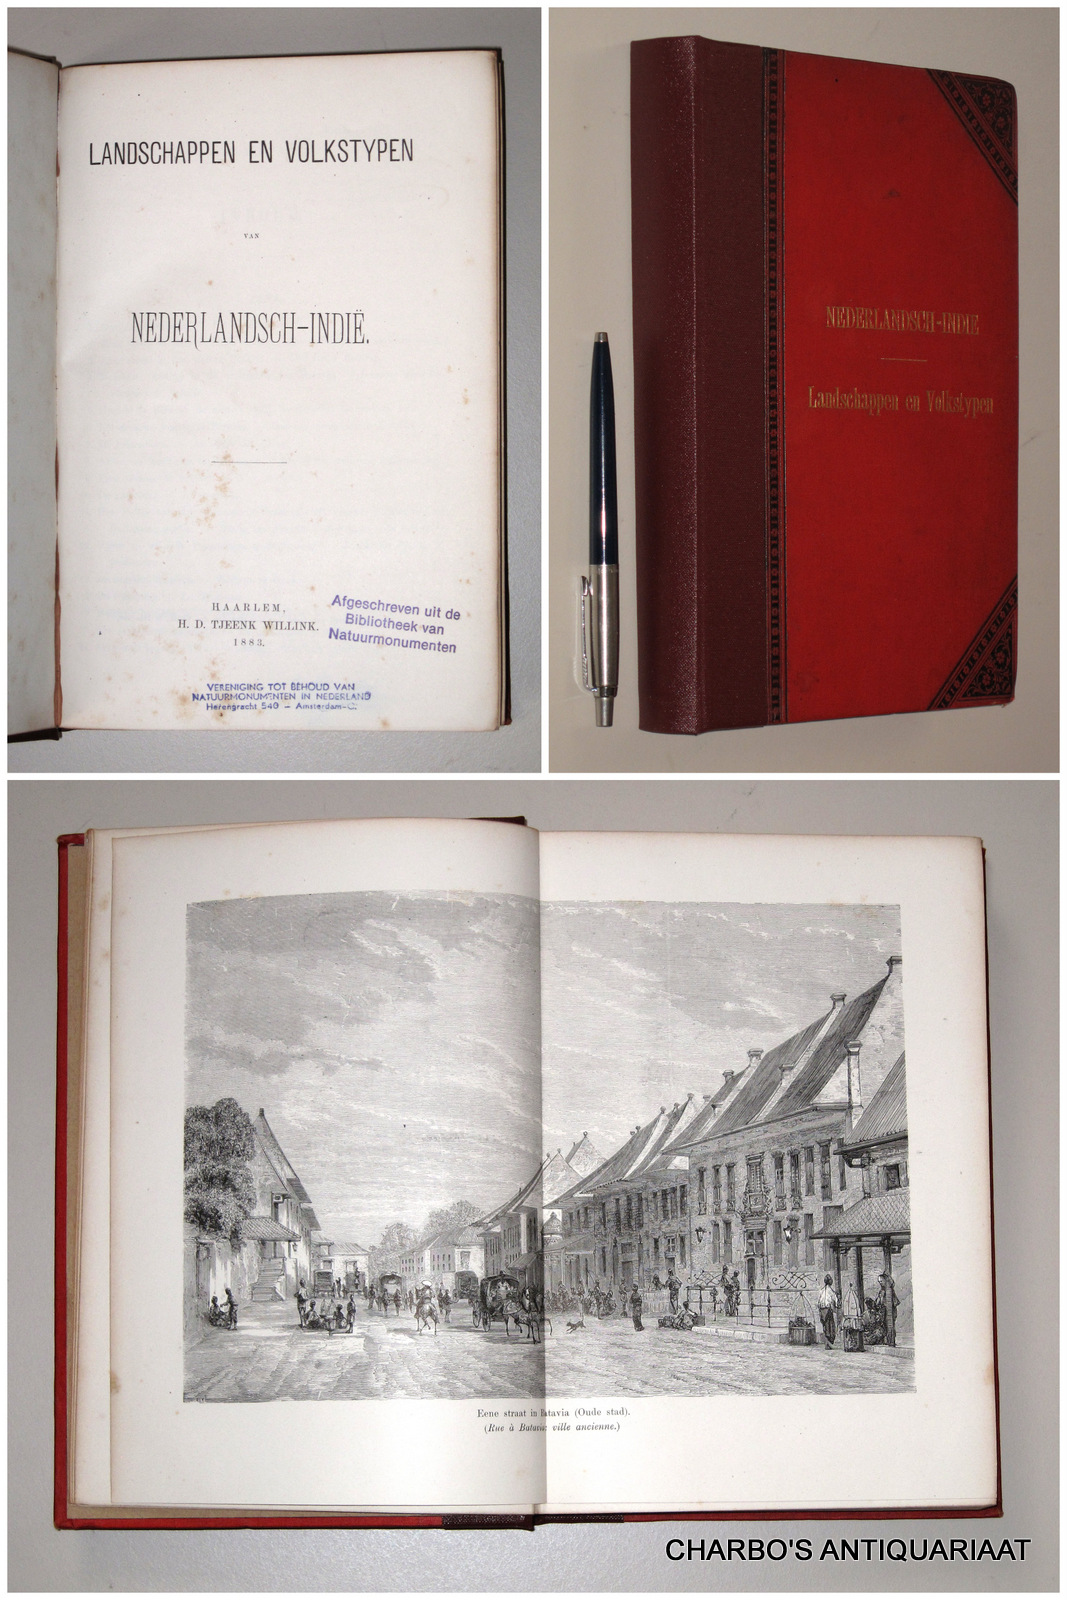 N/A, -  Landschappen en volkstypen van Nederlandsch-Indi. (Title on cover: Nederlandsch-Indie. Landschappen en volkstypen).